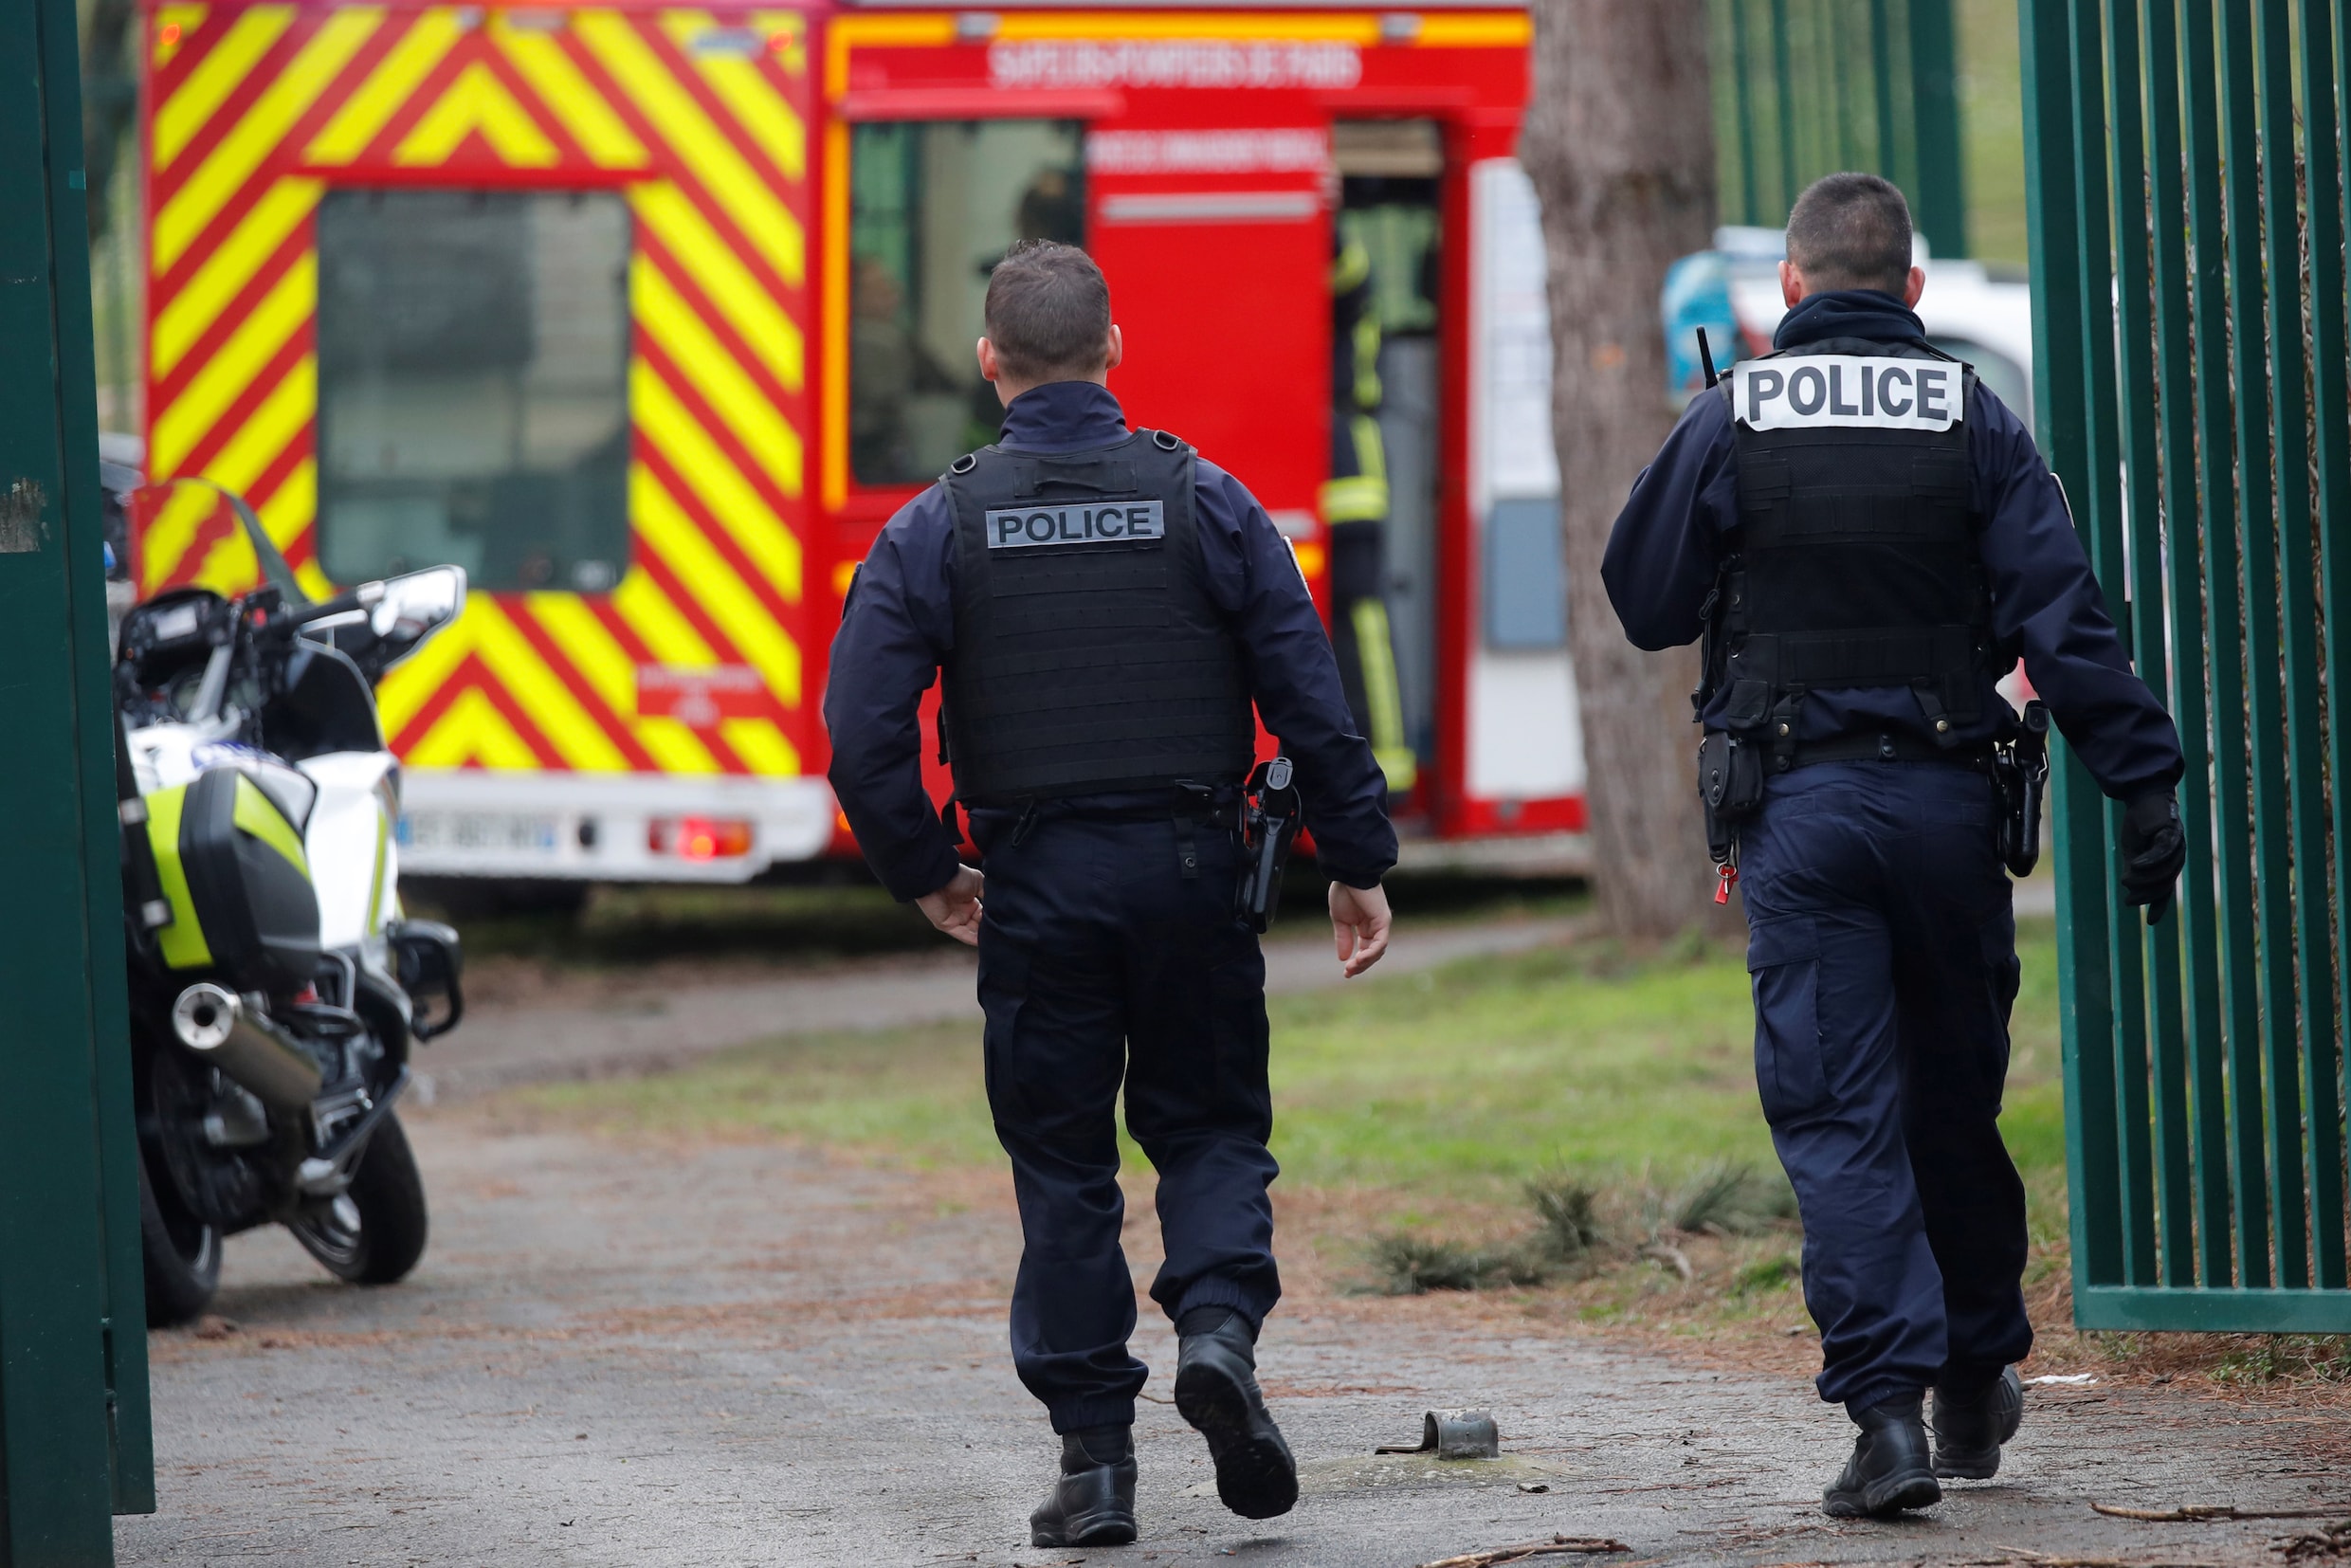 Dode en twee gewonden na mesaanval in Parijs, politie schiet dader dood